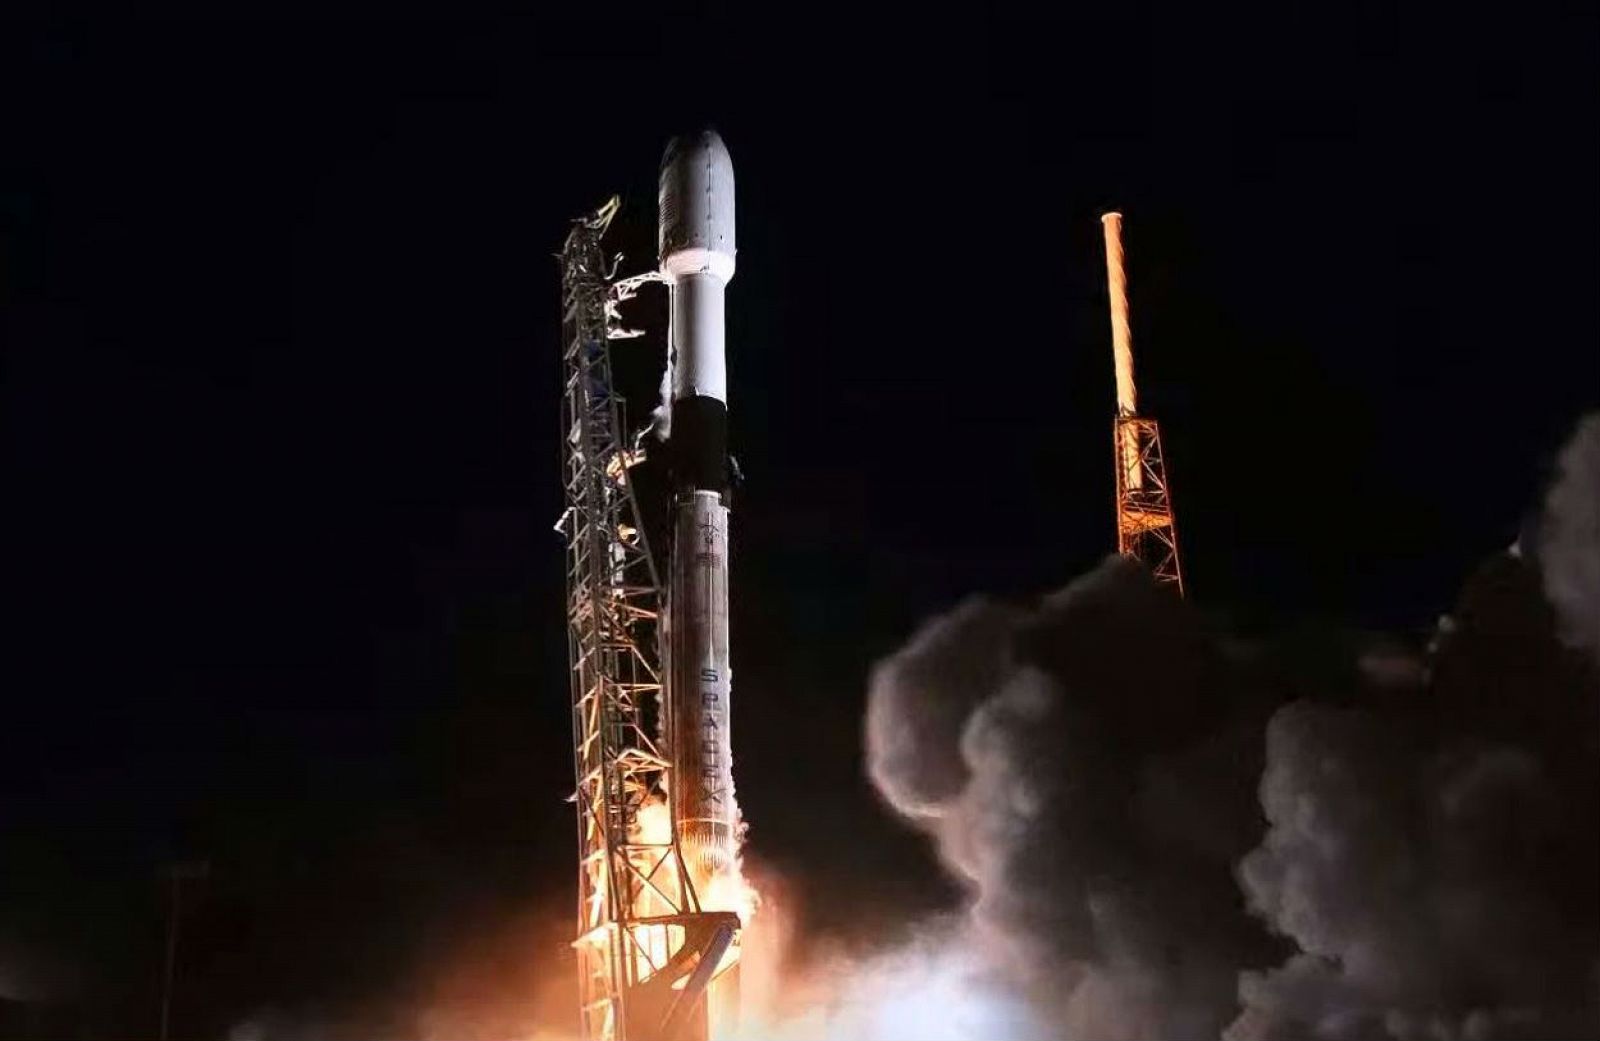 En la imagen, se muestra el lanzamiento de un cohete Falcon 9 por parte de SpaceX desde Cabo Cañaveral, Florida.